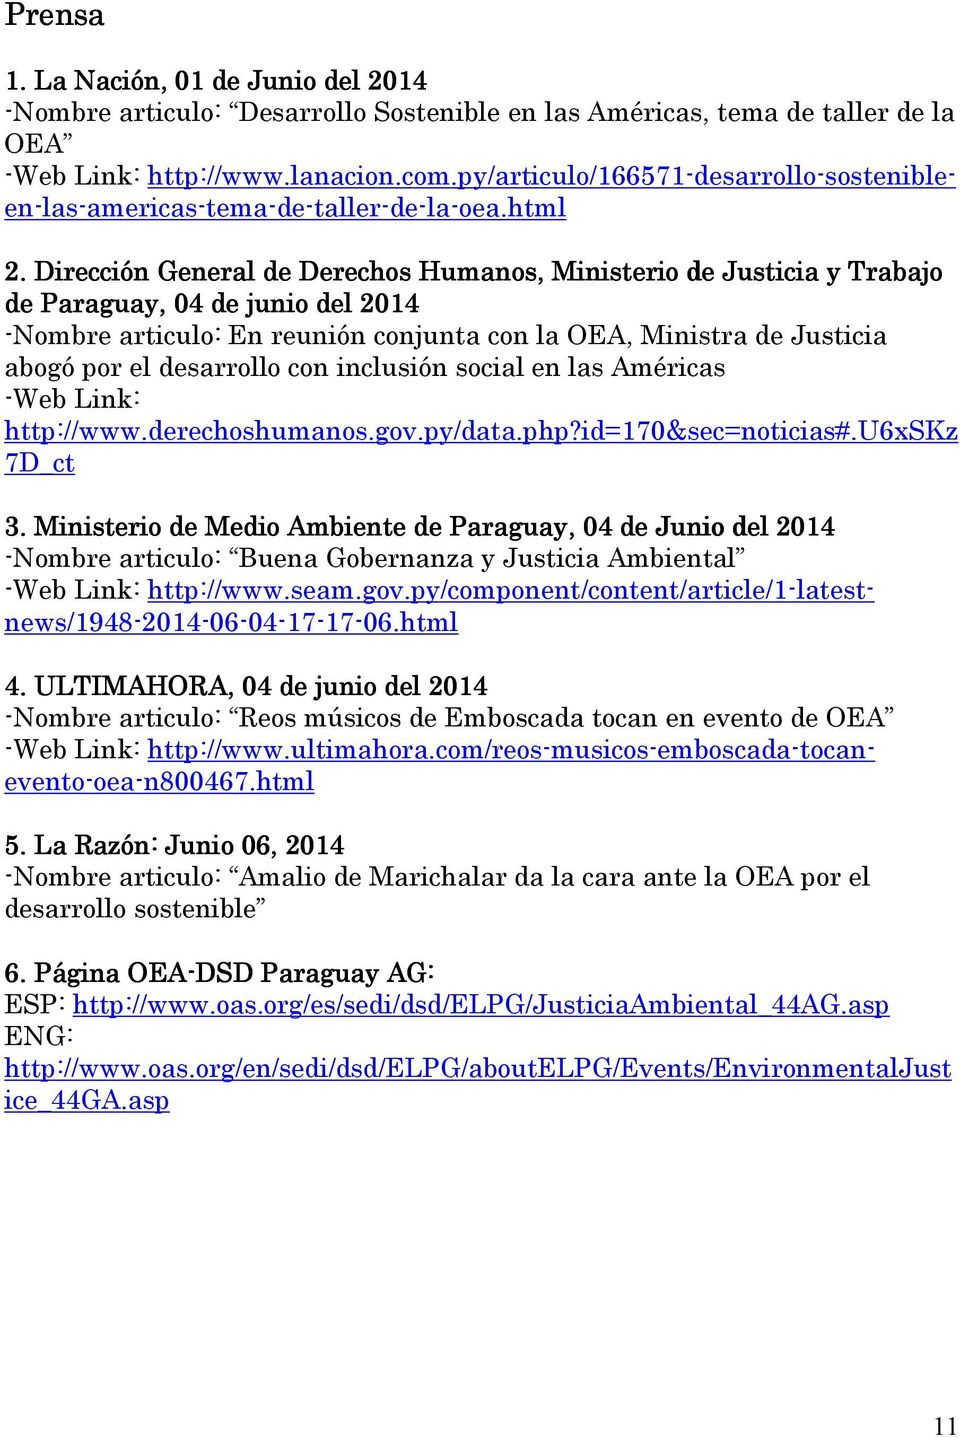 Dirección General de Derechos Humanos, Ministerio de Justicia y Trabajo de Paraguay,, 04 de junio del 2014 -Nombre articulo: En reunión conjunta con la OEA, Ministra de Justicia abogó por el